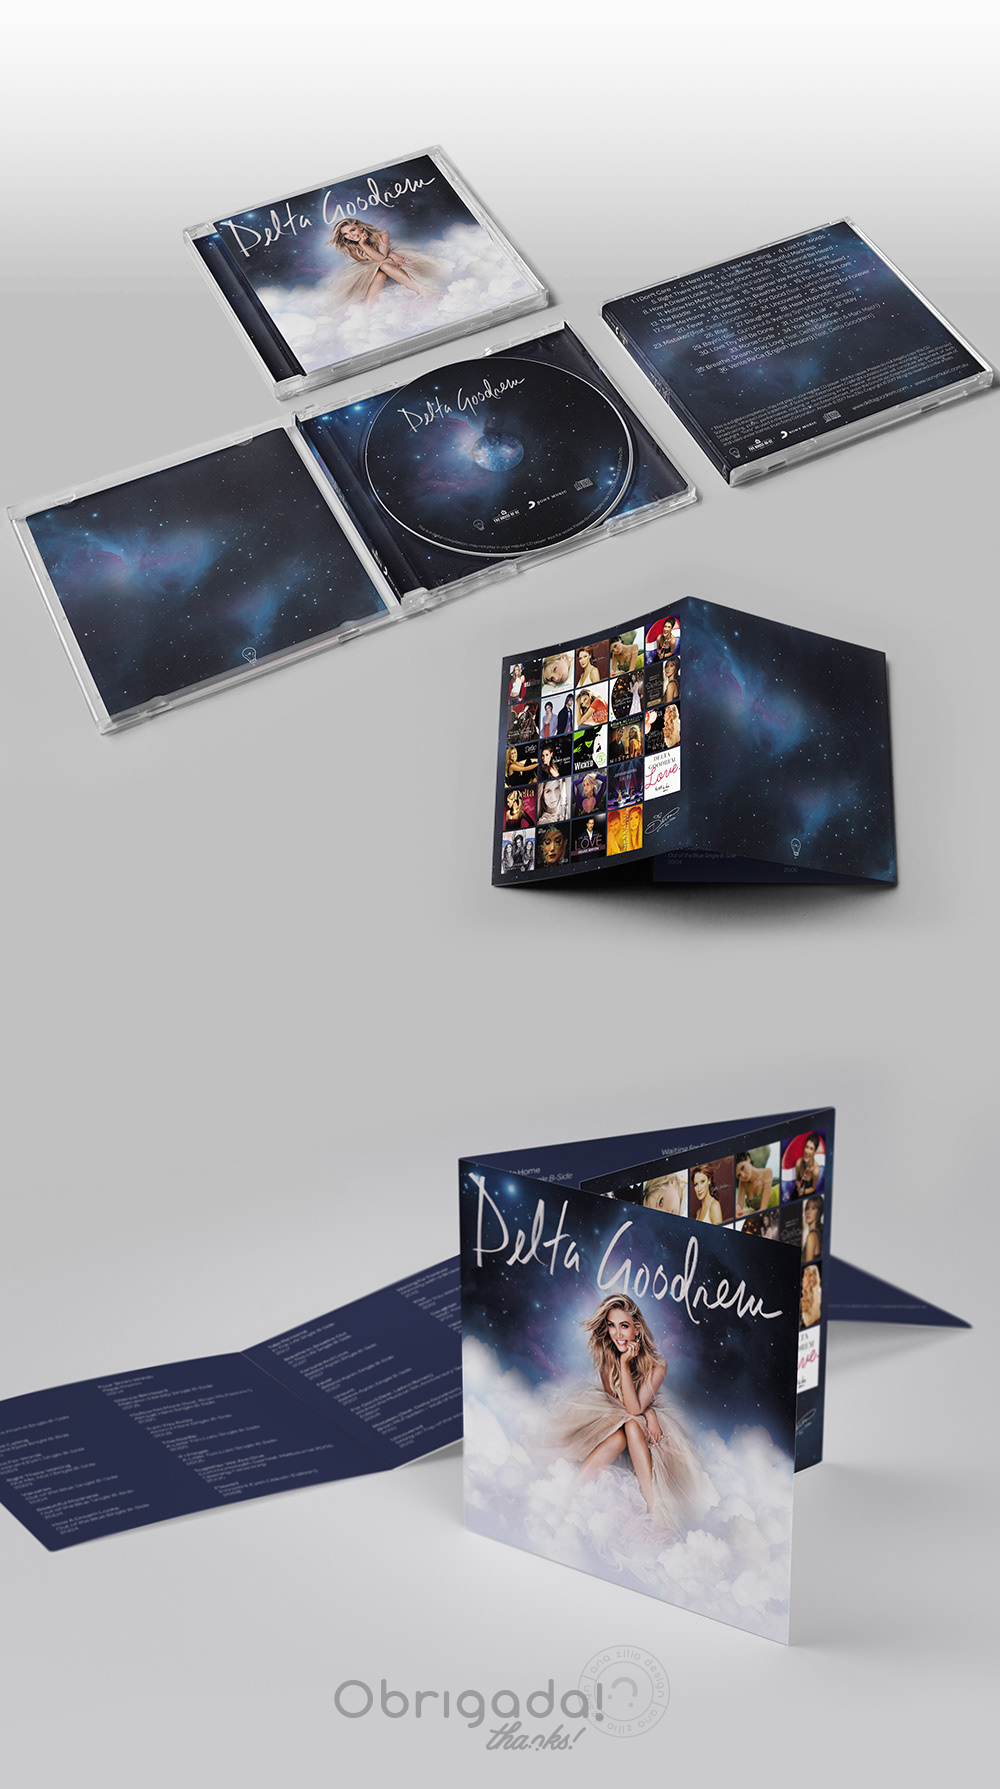 Album Music Packaging cover cd Booklet artwork Delta Goodrem Australia Singer music